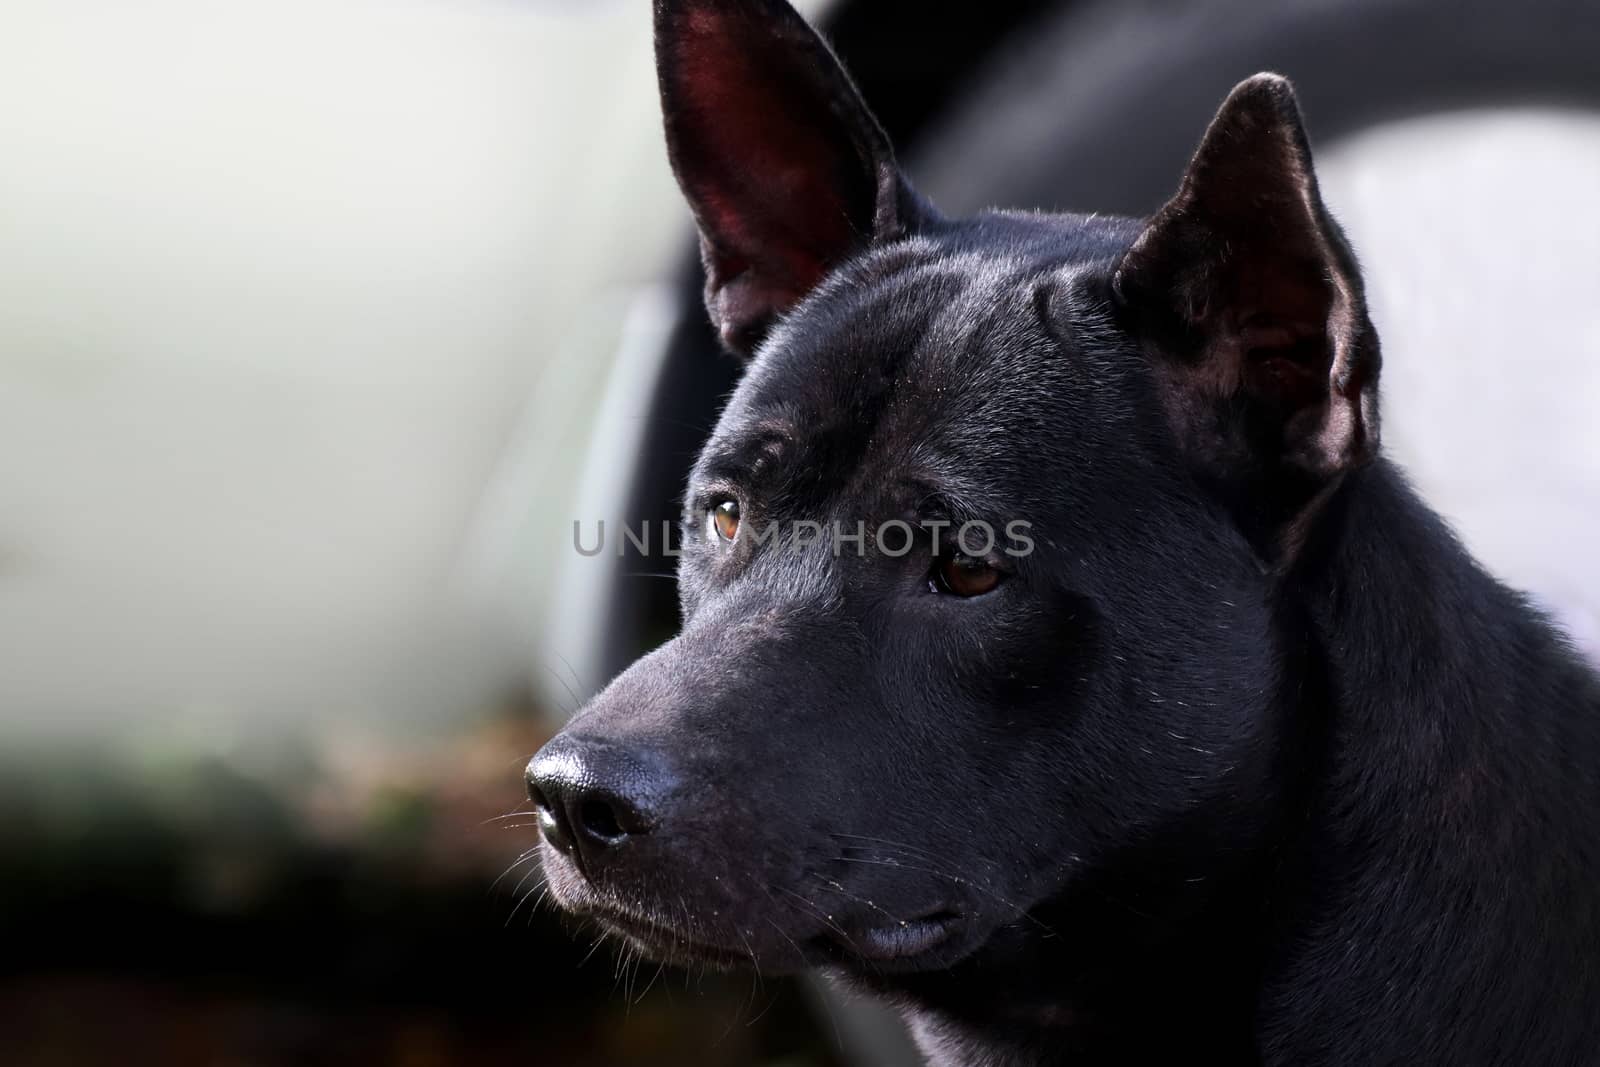 Dog, Black dog face close up (Selective Focus)